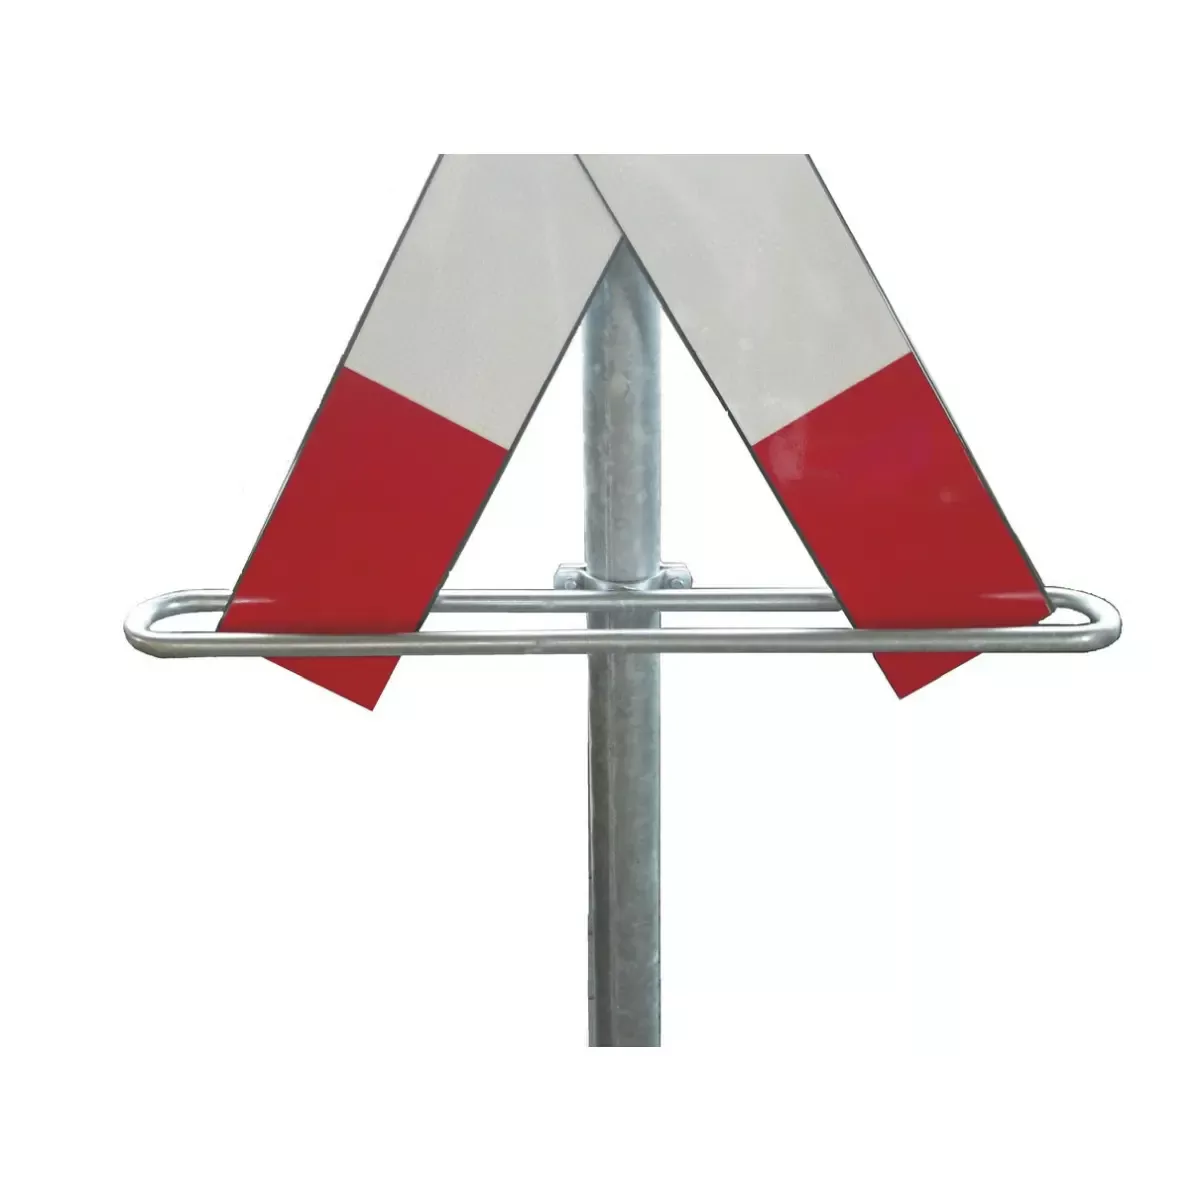 Befestigungsmaterial Andreaskreuzbügel, Stahl verzinkt, rot lackiert, für Pfosten ø 76 mm für Befestigen und Montieren